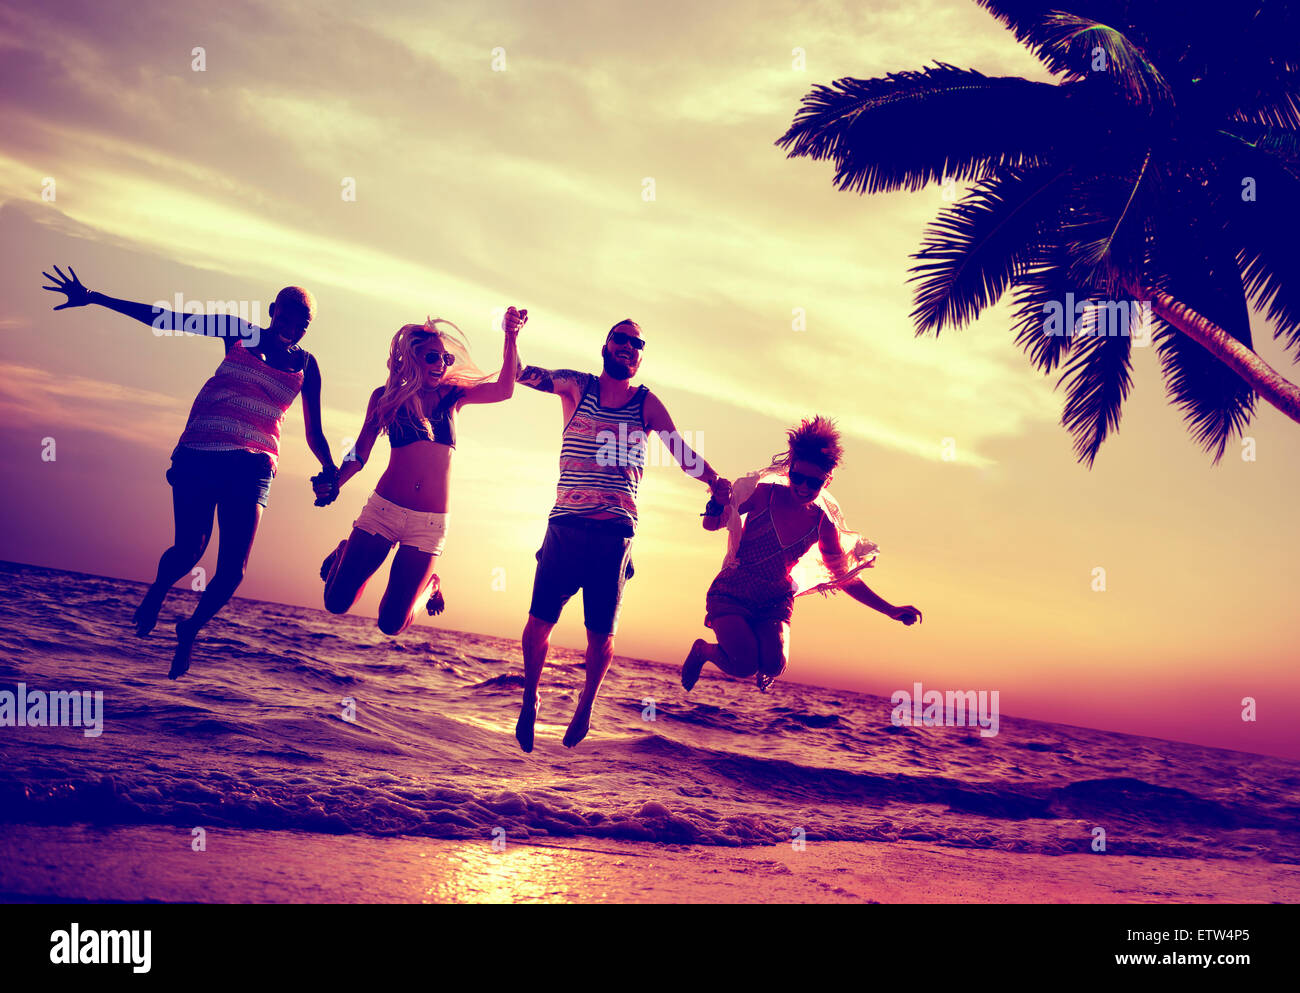 Diverse Beach Summer Friends Fun Jump Shot Concept Stock Photo